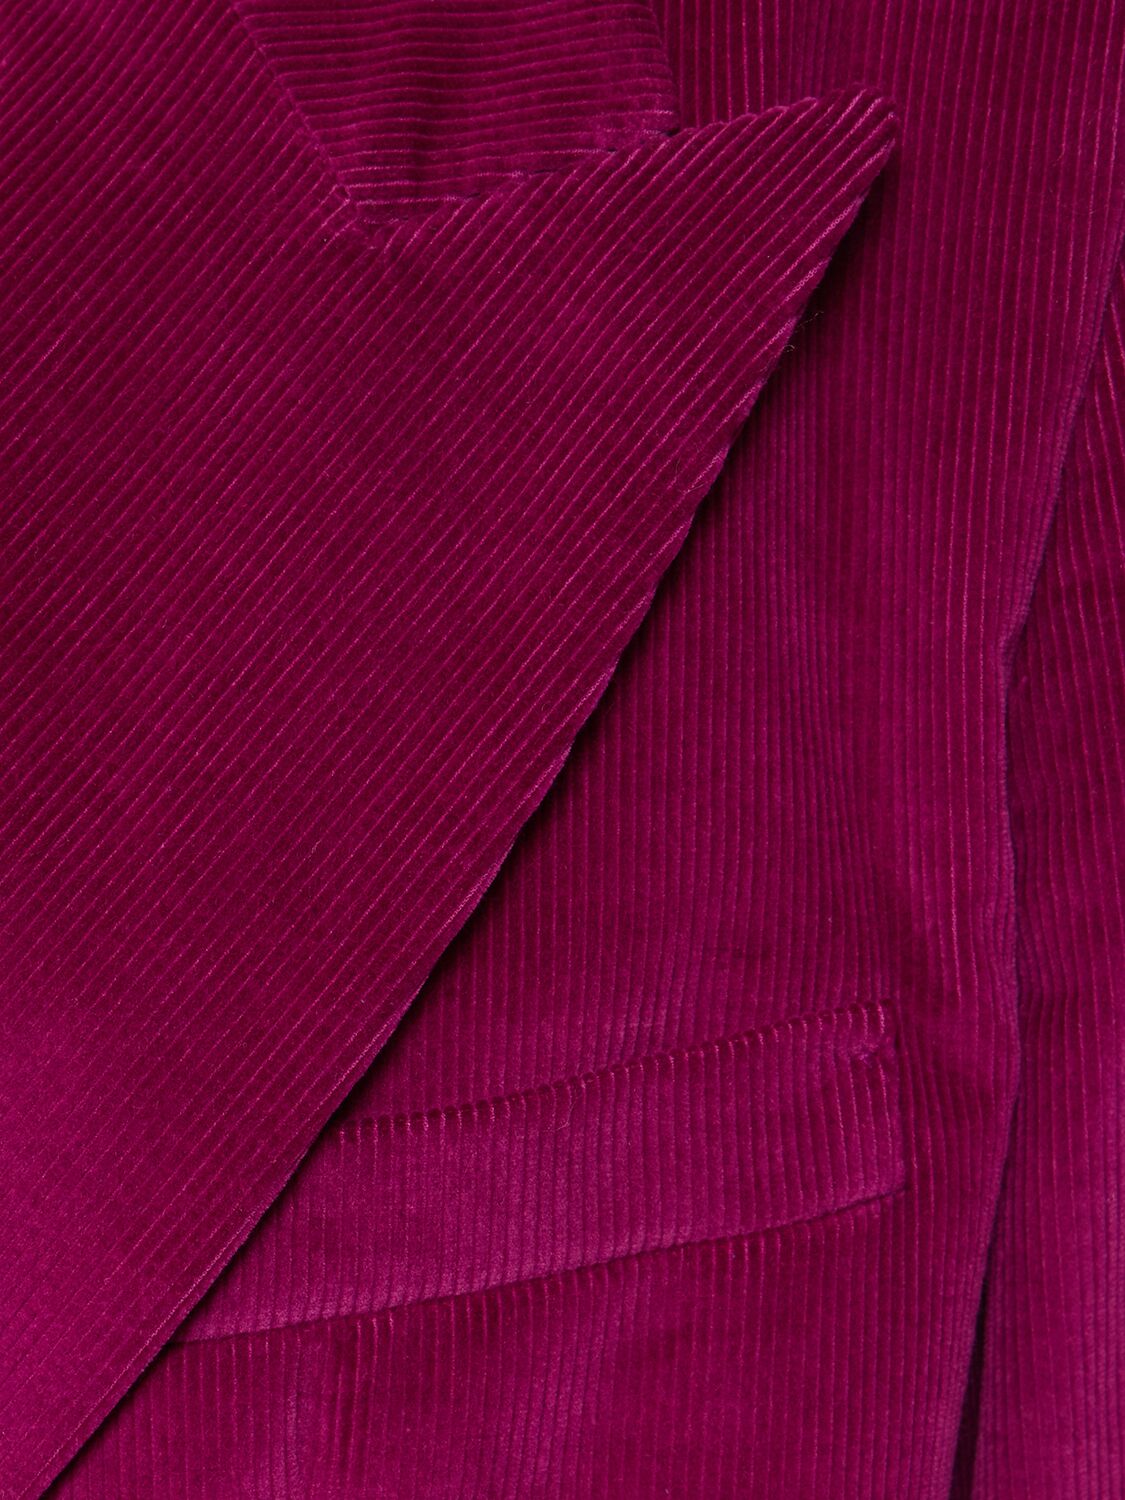 Shop Blazé Milano Amara Heart Cotton Blend Blazer In Purple